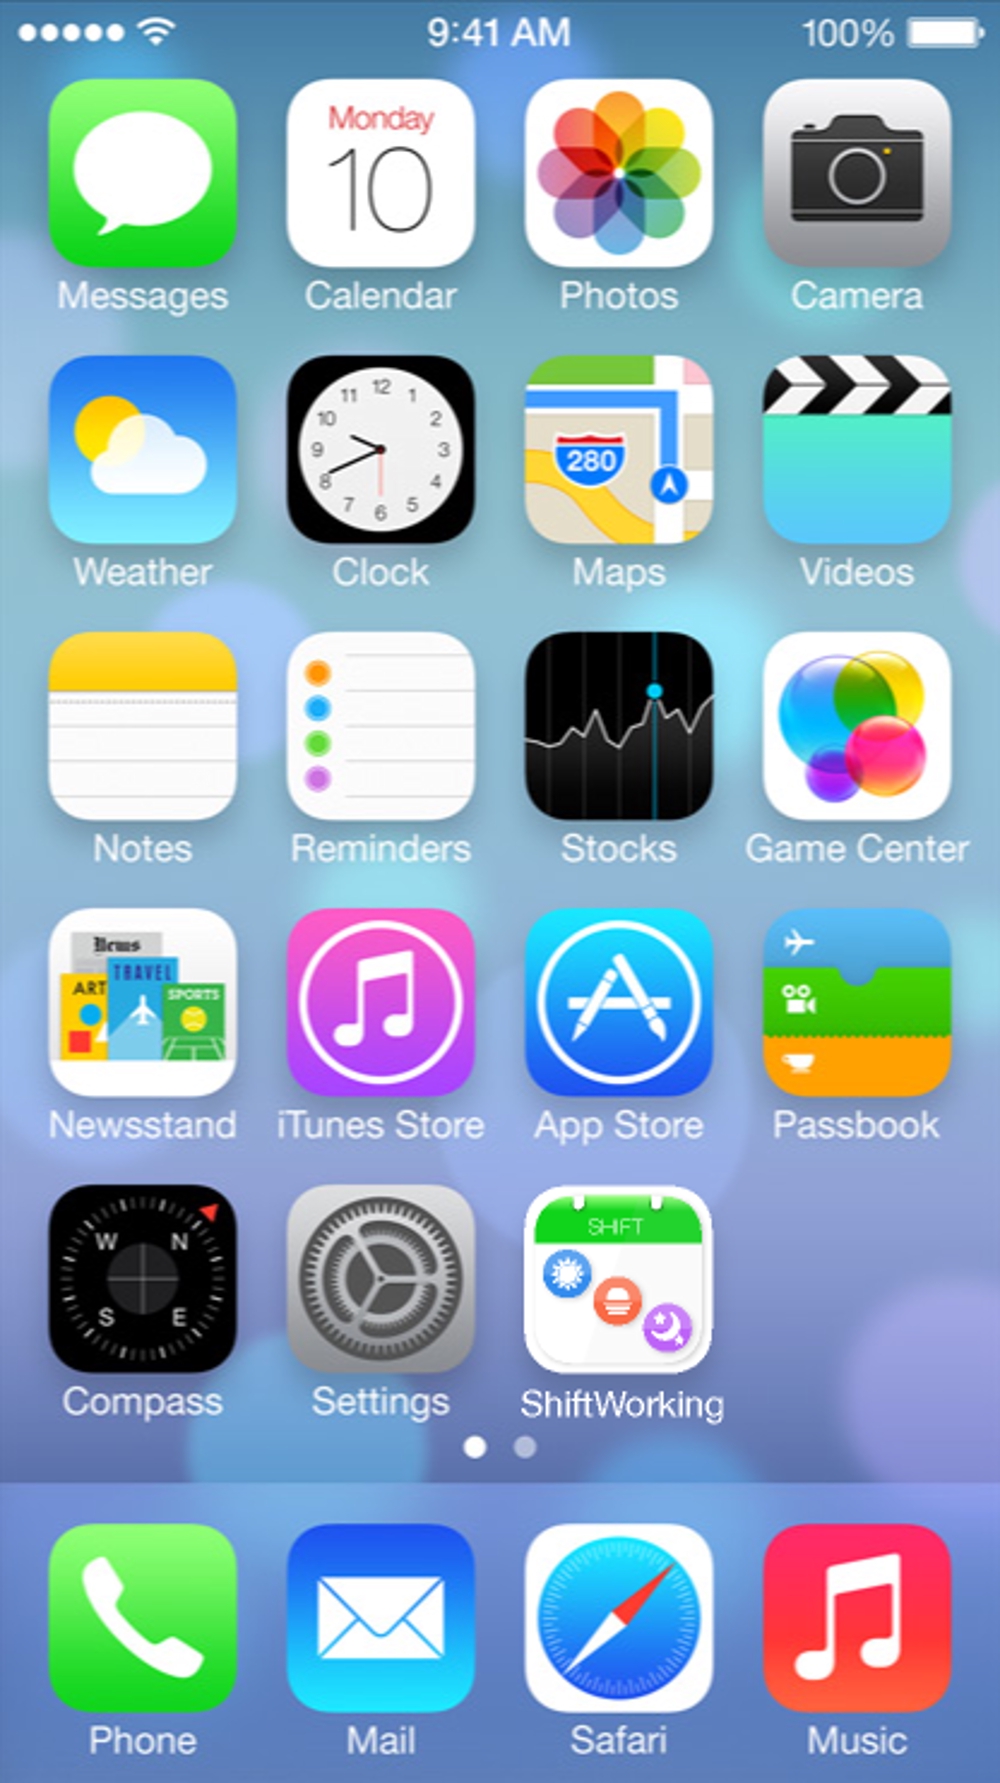 iPhoneアプリアイコン iOS7フラットデザイン風に変更